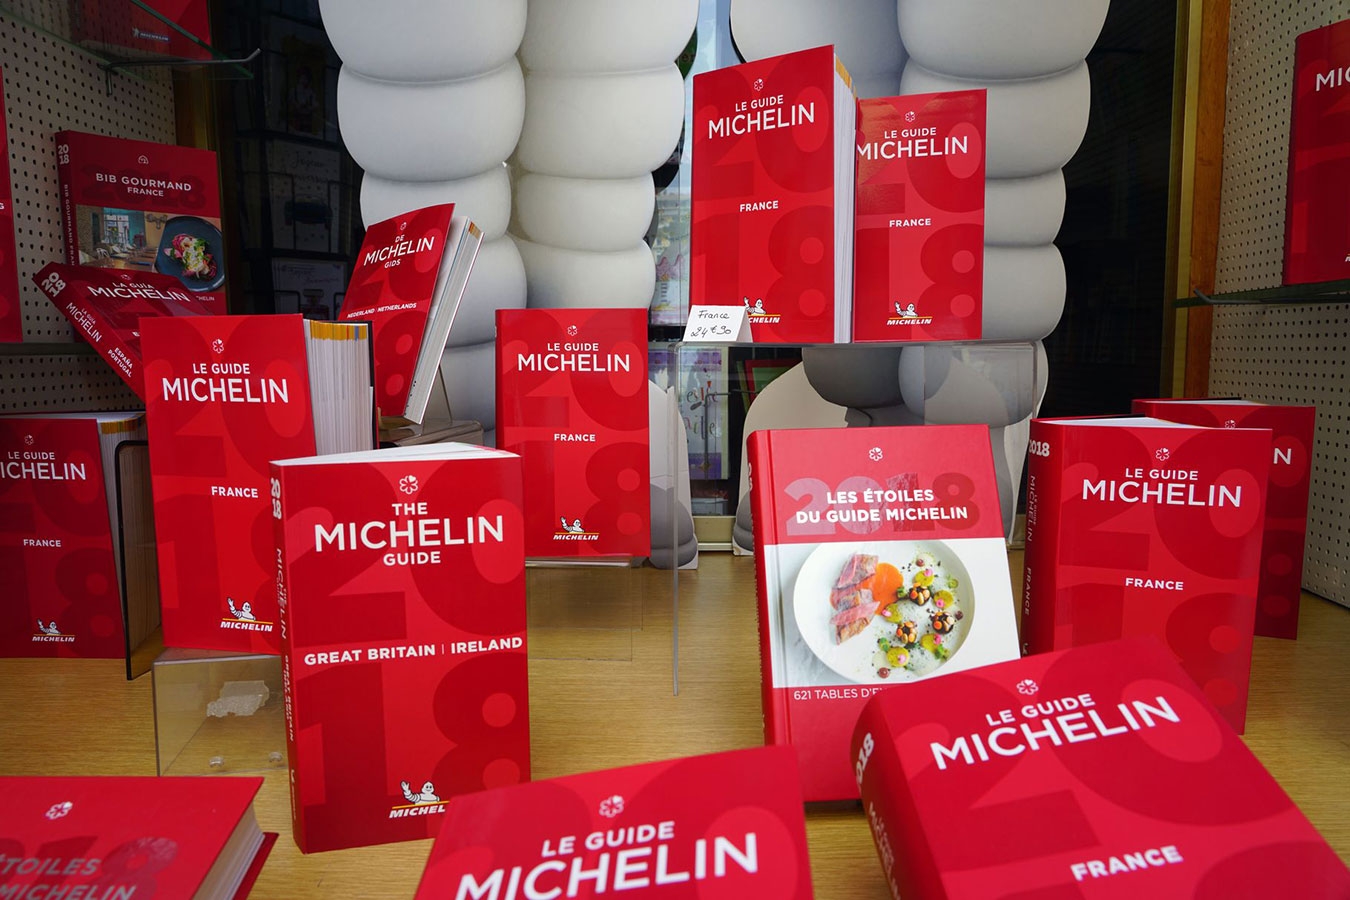 知名美食指南书籍《米其林指南》（Guide Michelin）公布了越南获“米其林一星荣誉”的4家餐厅。